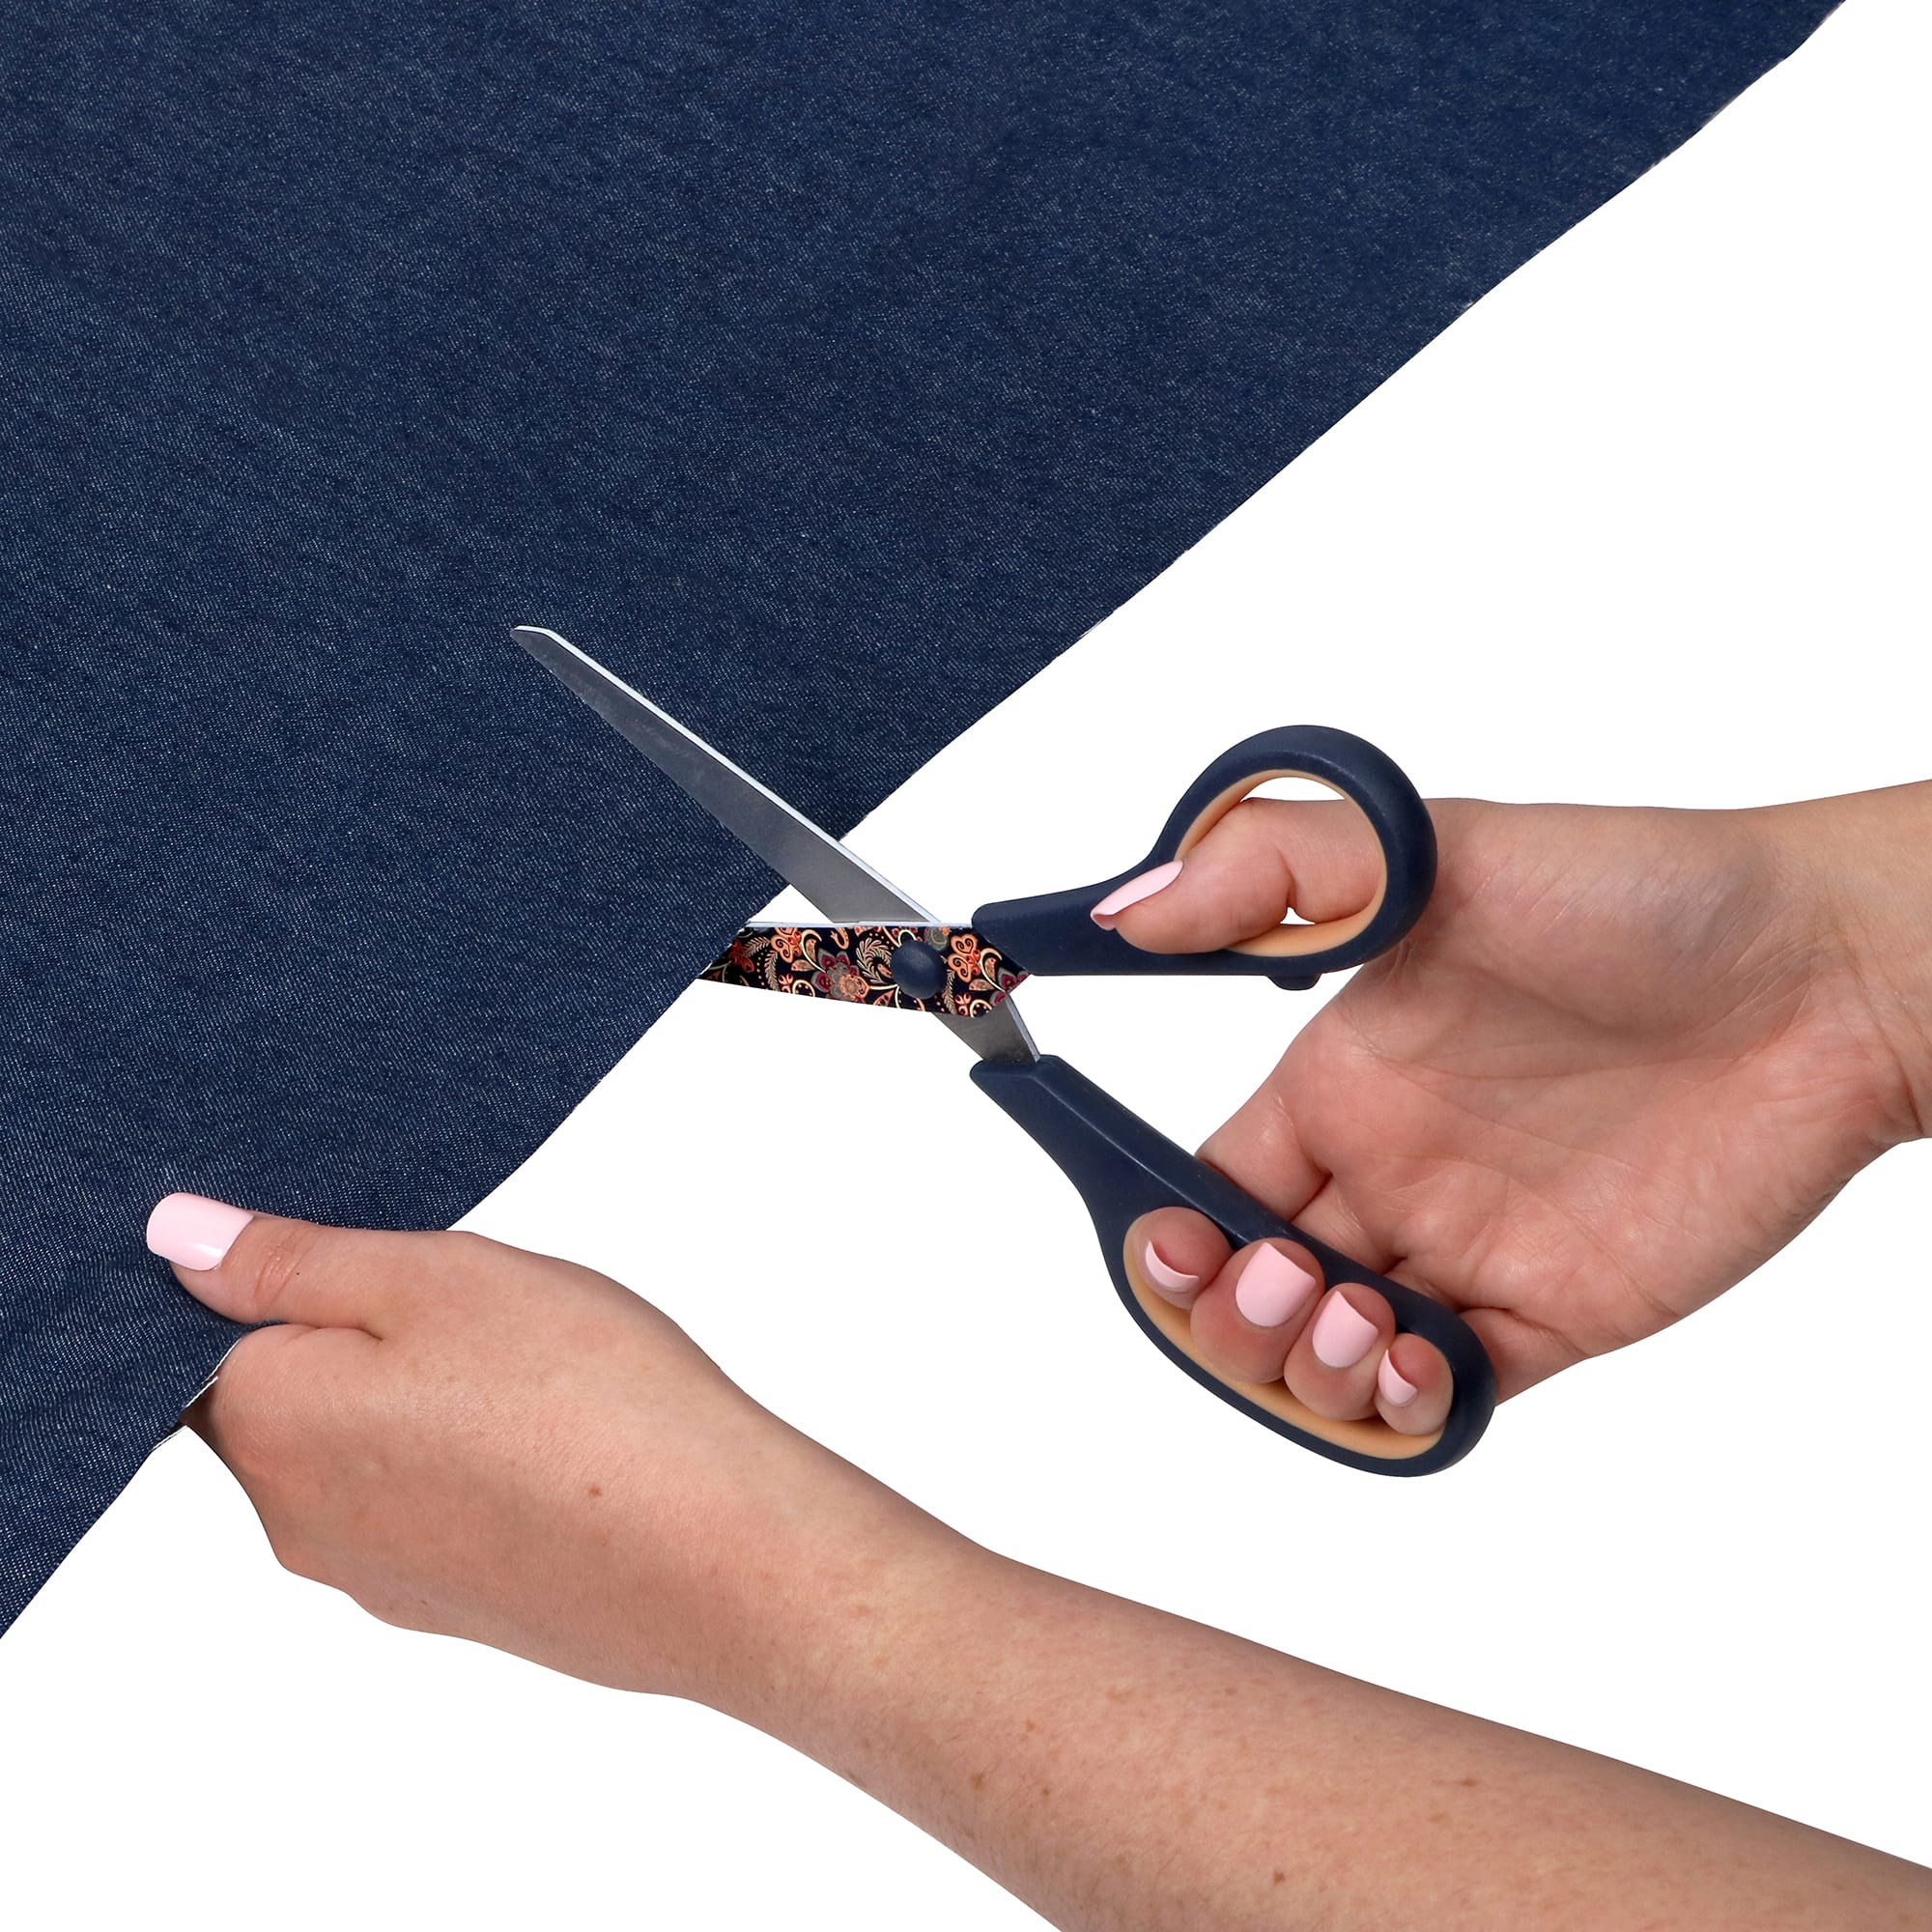 Singer Fabric & Craft Scissors Set W/comfort Grip 2/pkg-8.5